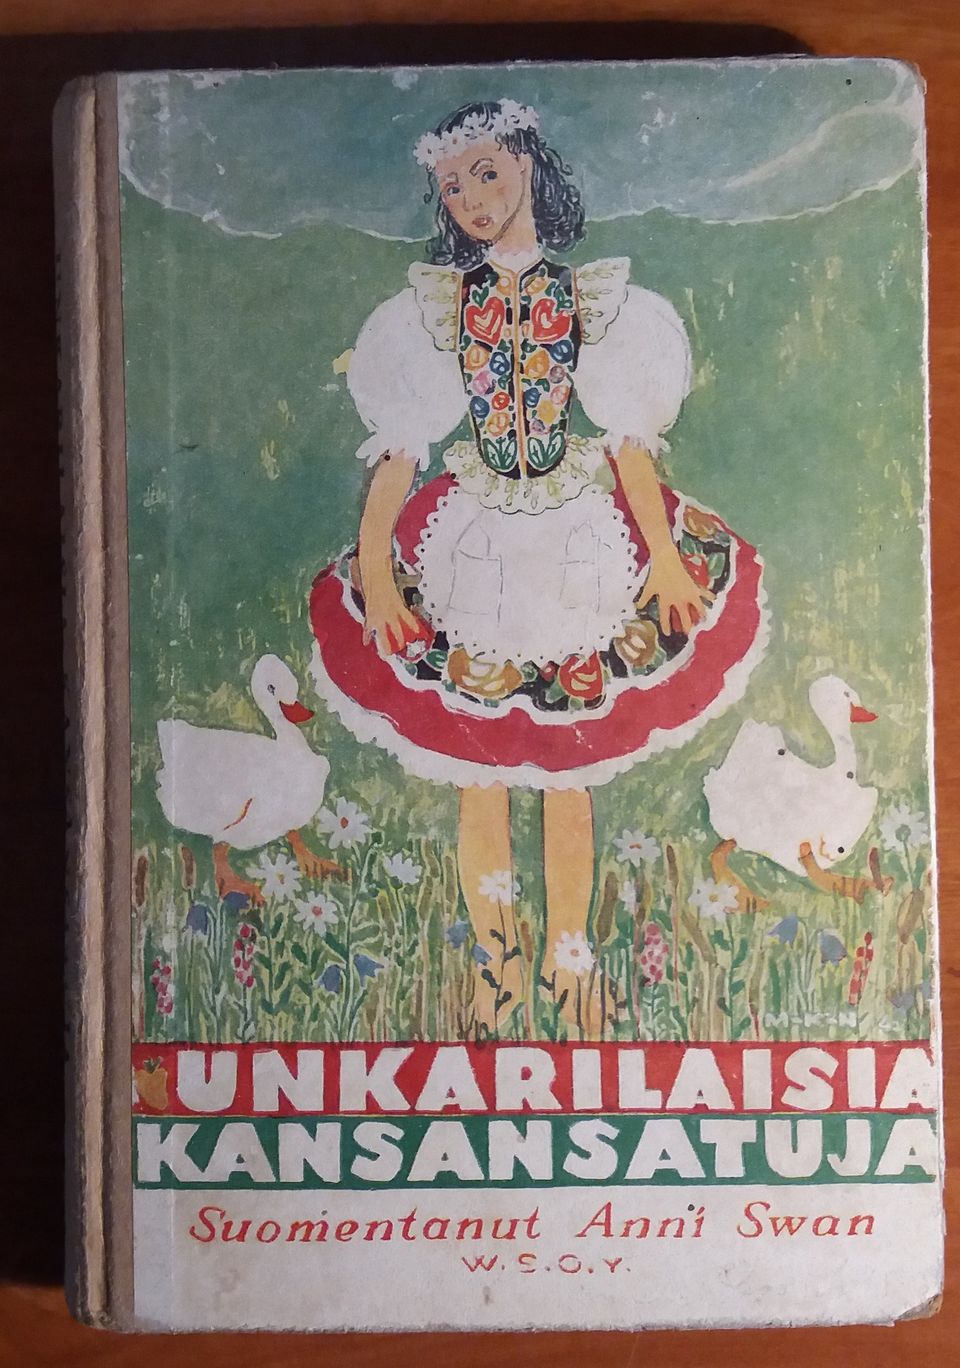 Suomentanut Anni Swan UNKARILAISIA KANSANSATUJA Wsoy 1945